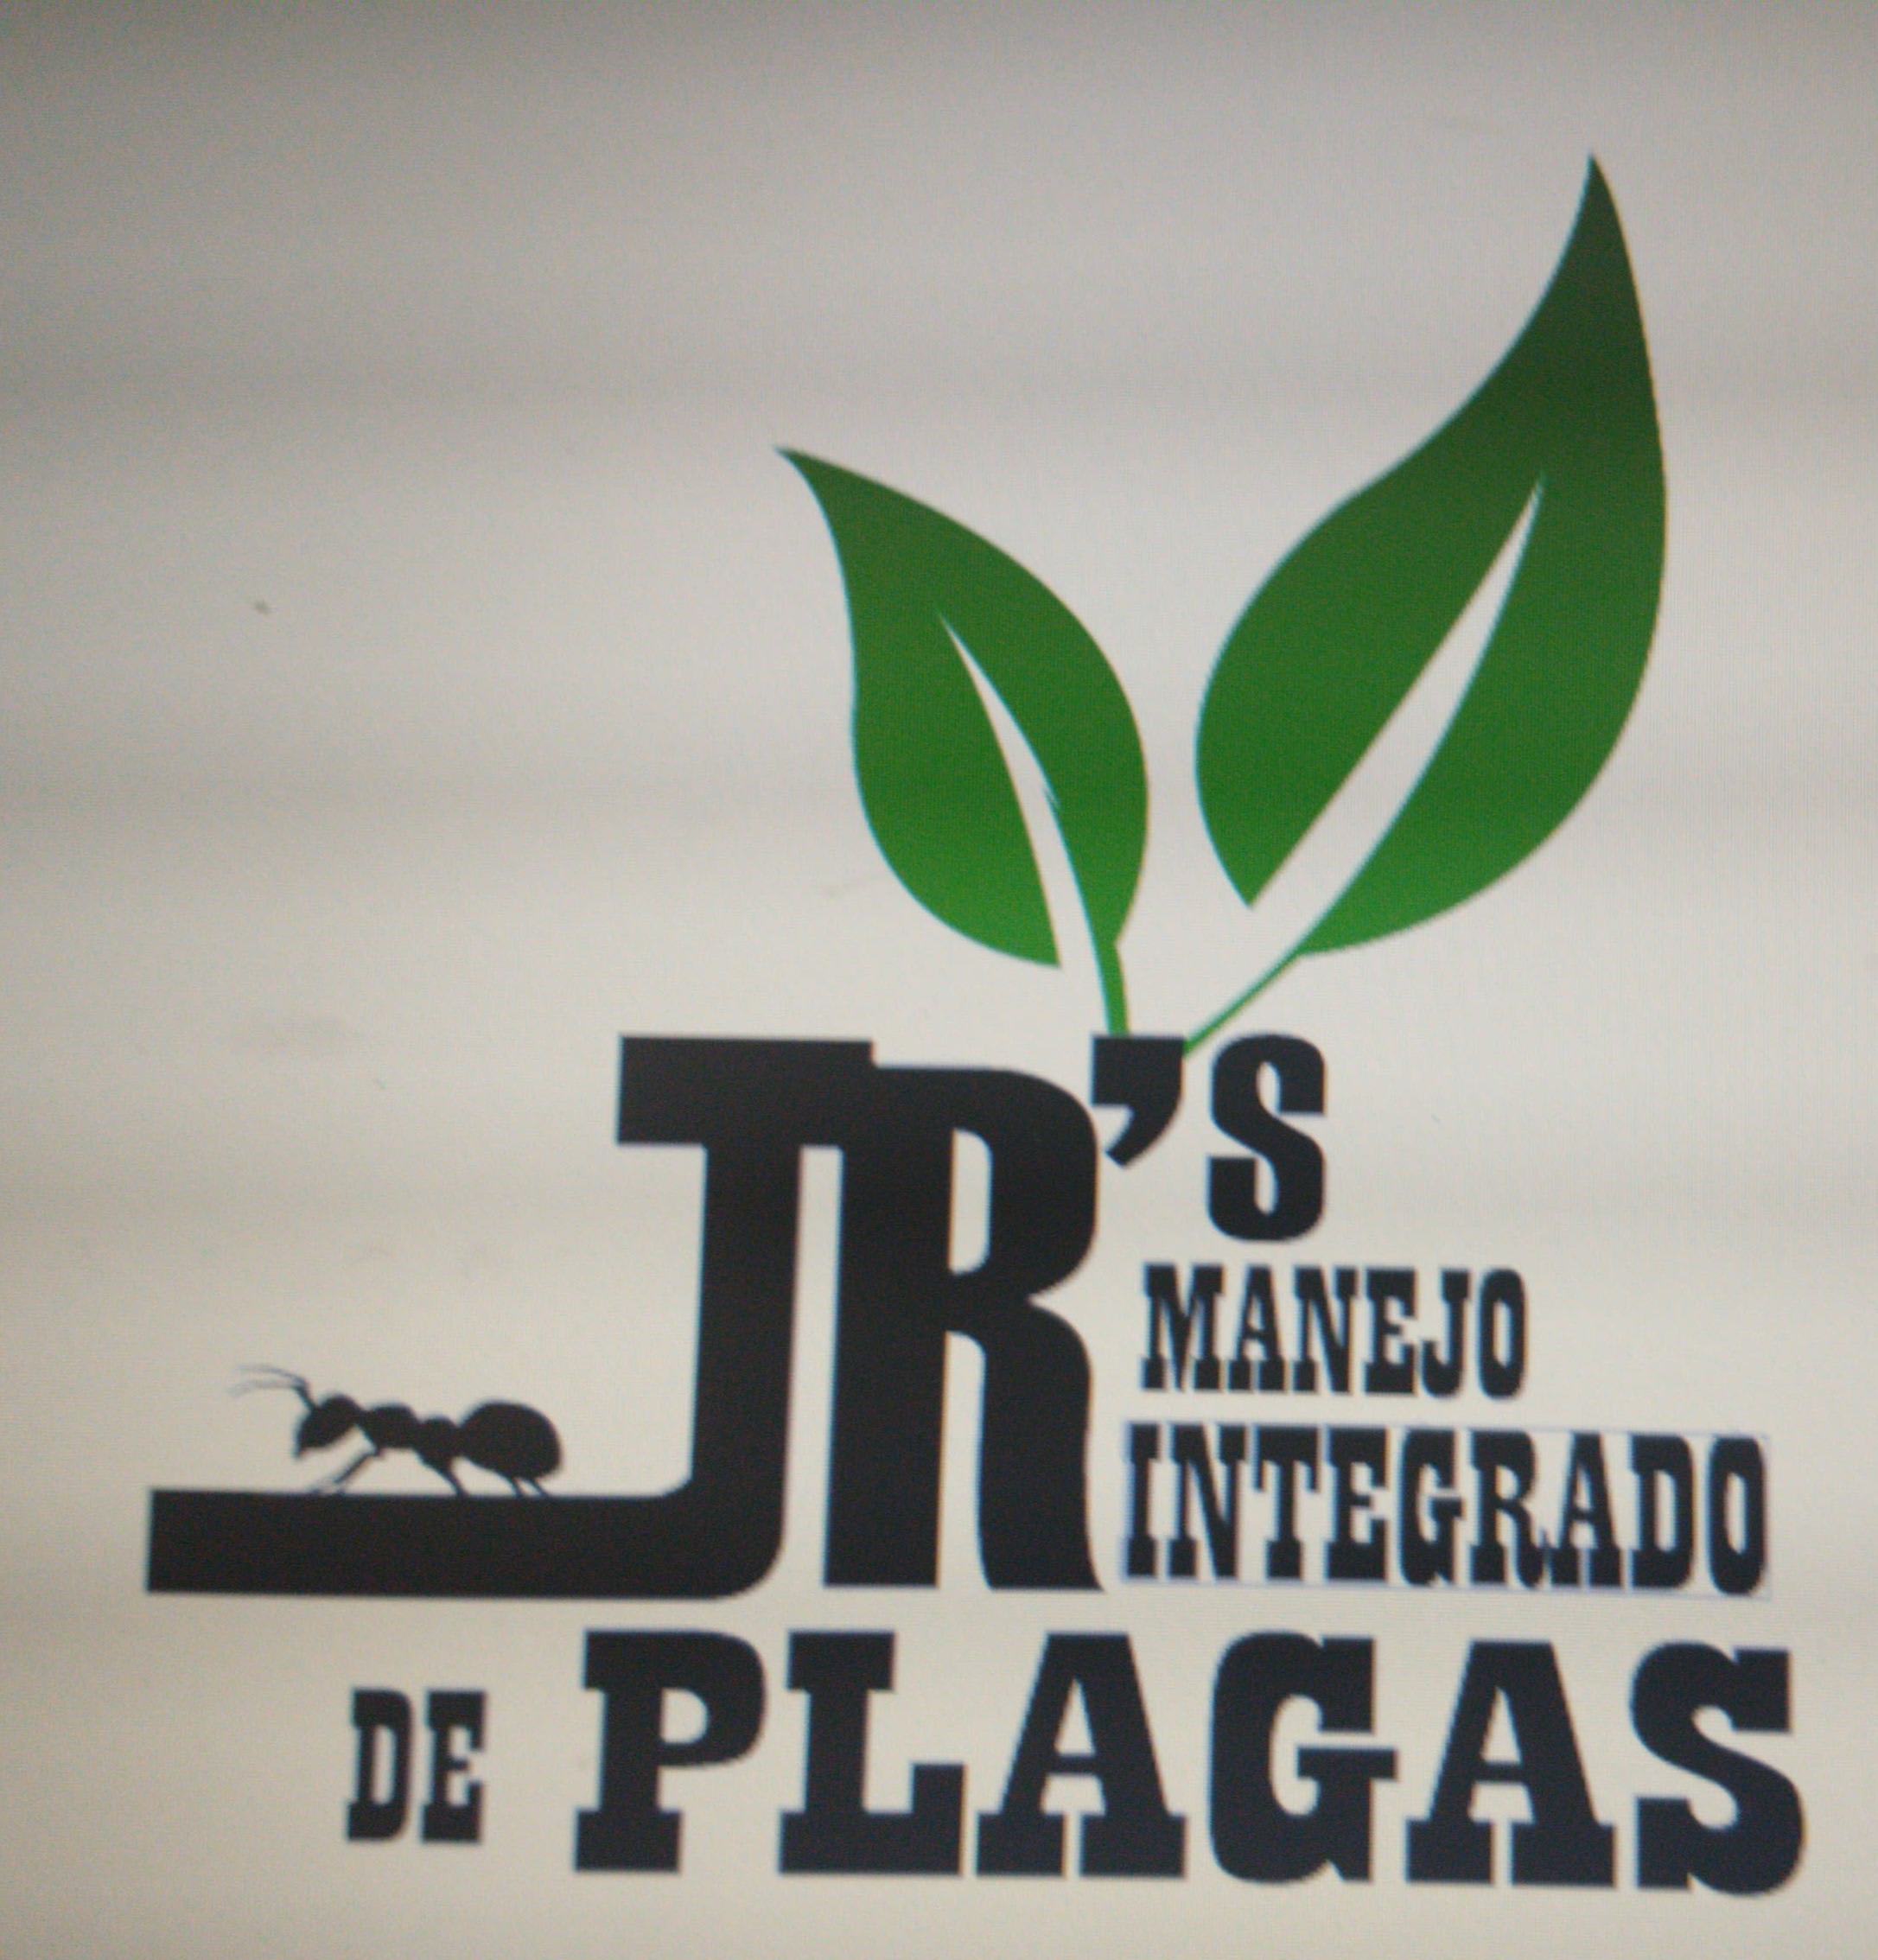 Jr's Manejo Integrado de Plagas